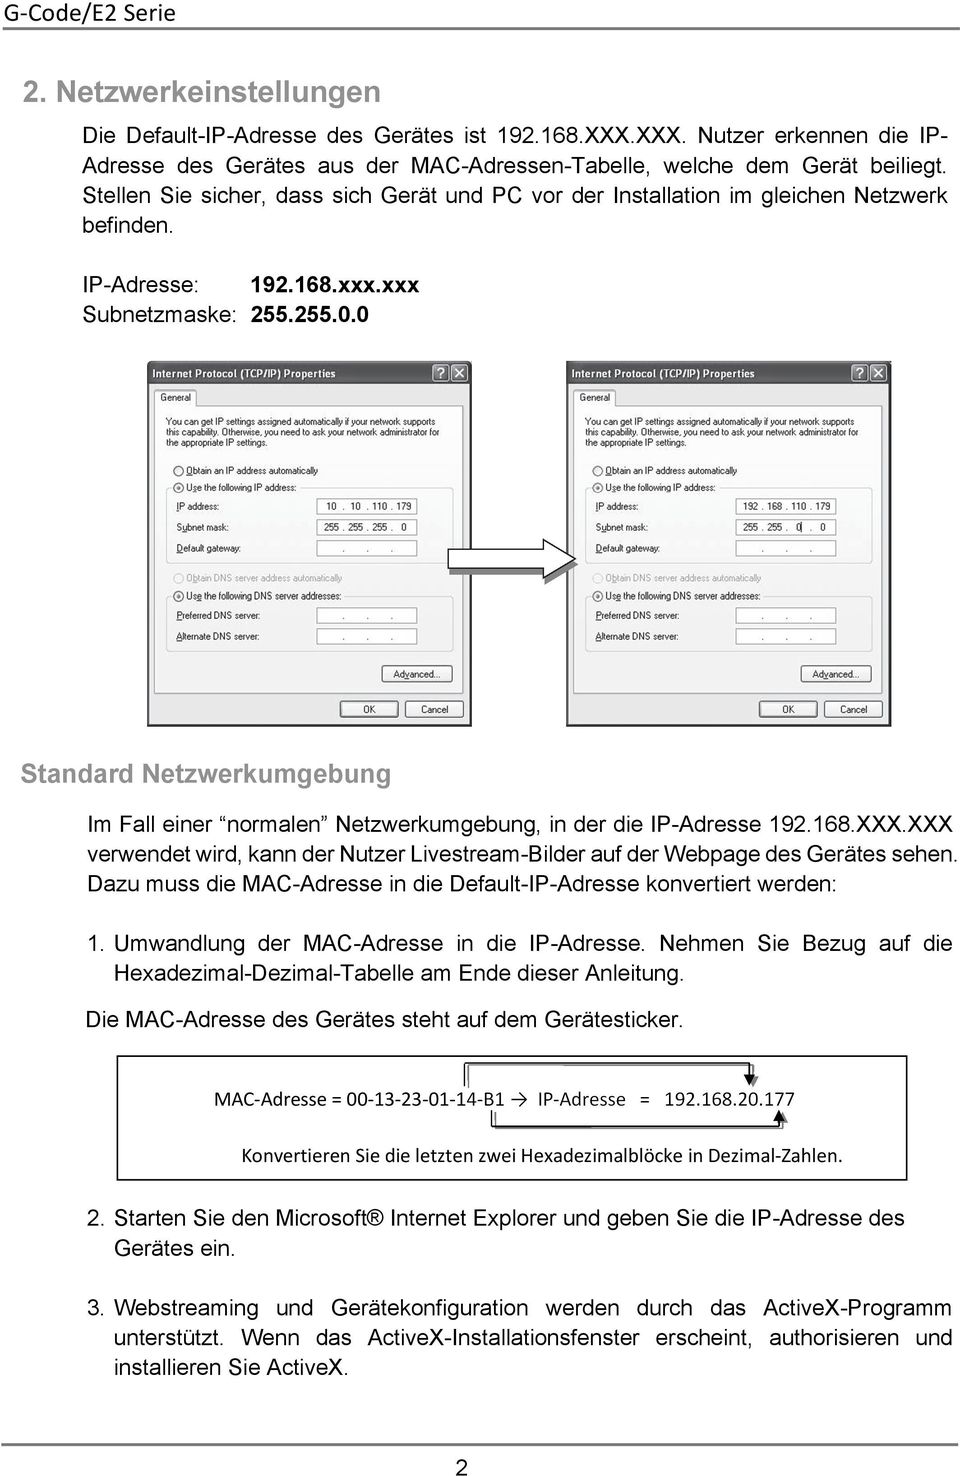 0 Standard Netzwerkumgebung Im Fall einer normalen Netzwerkumgebung, in der die IP-Adresse 192.168.XXX.XXX verwendet wird, kann der Nutzer Livestream-Bilder auf der Webpage des Gerätes sehen.